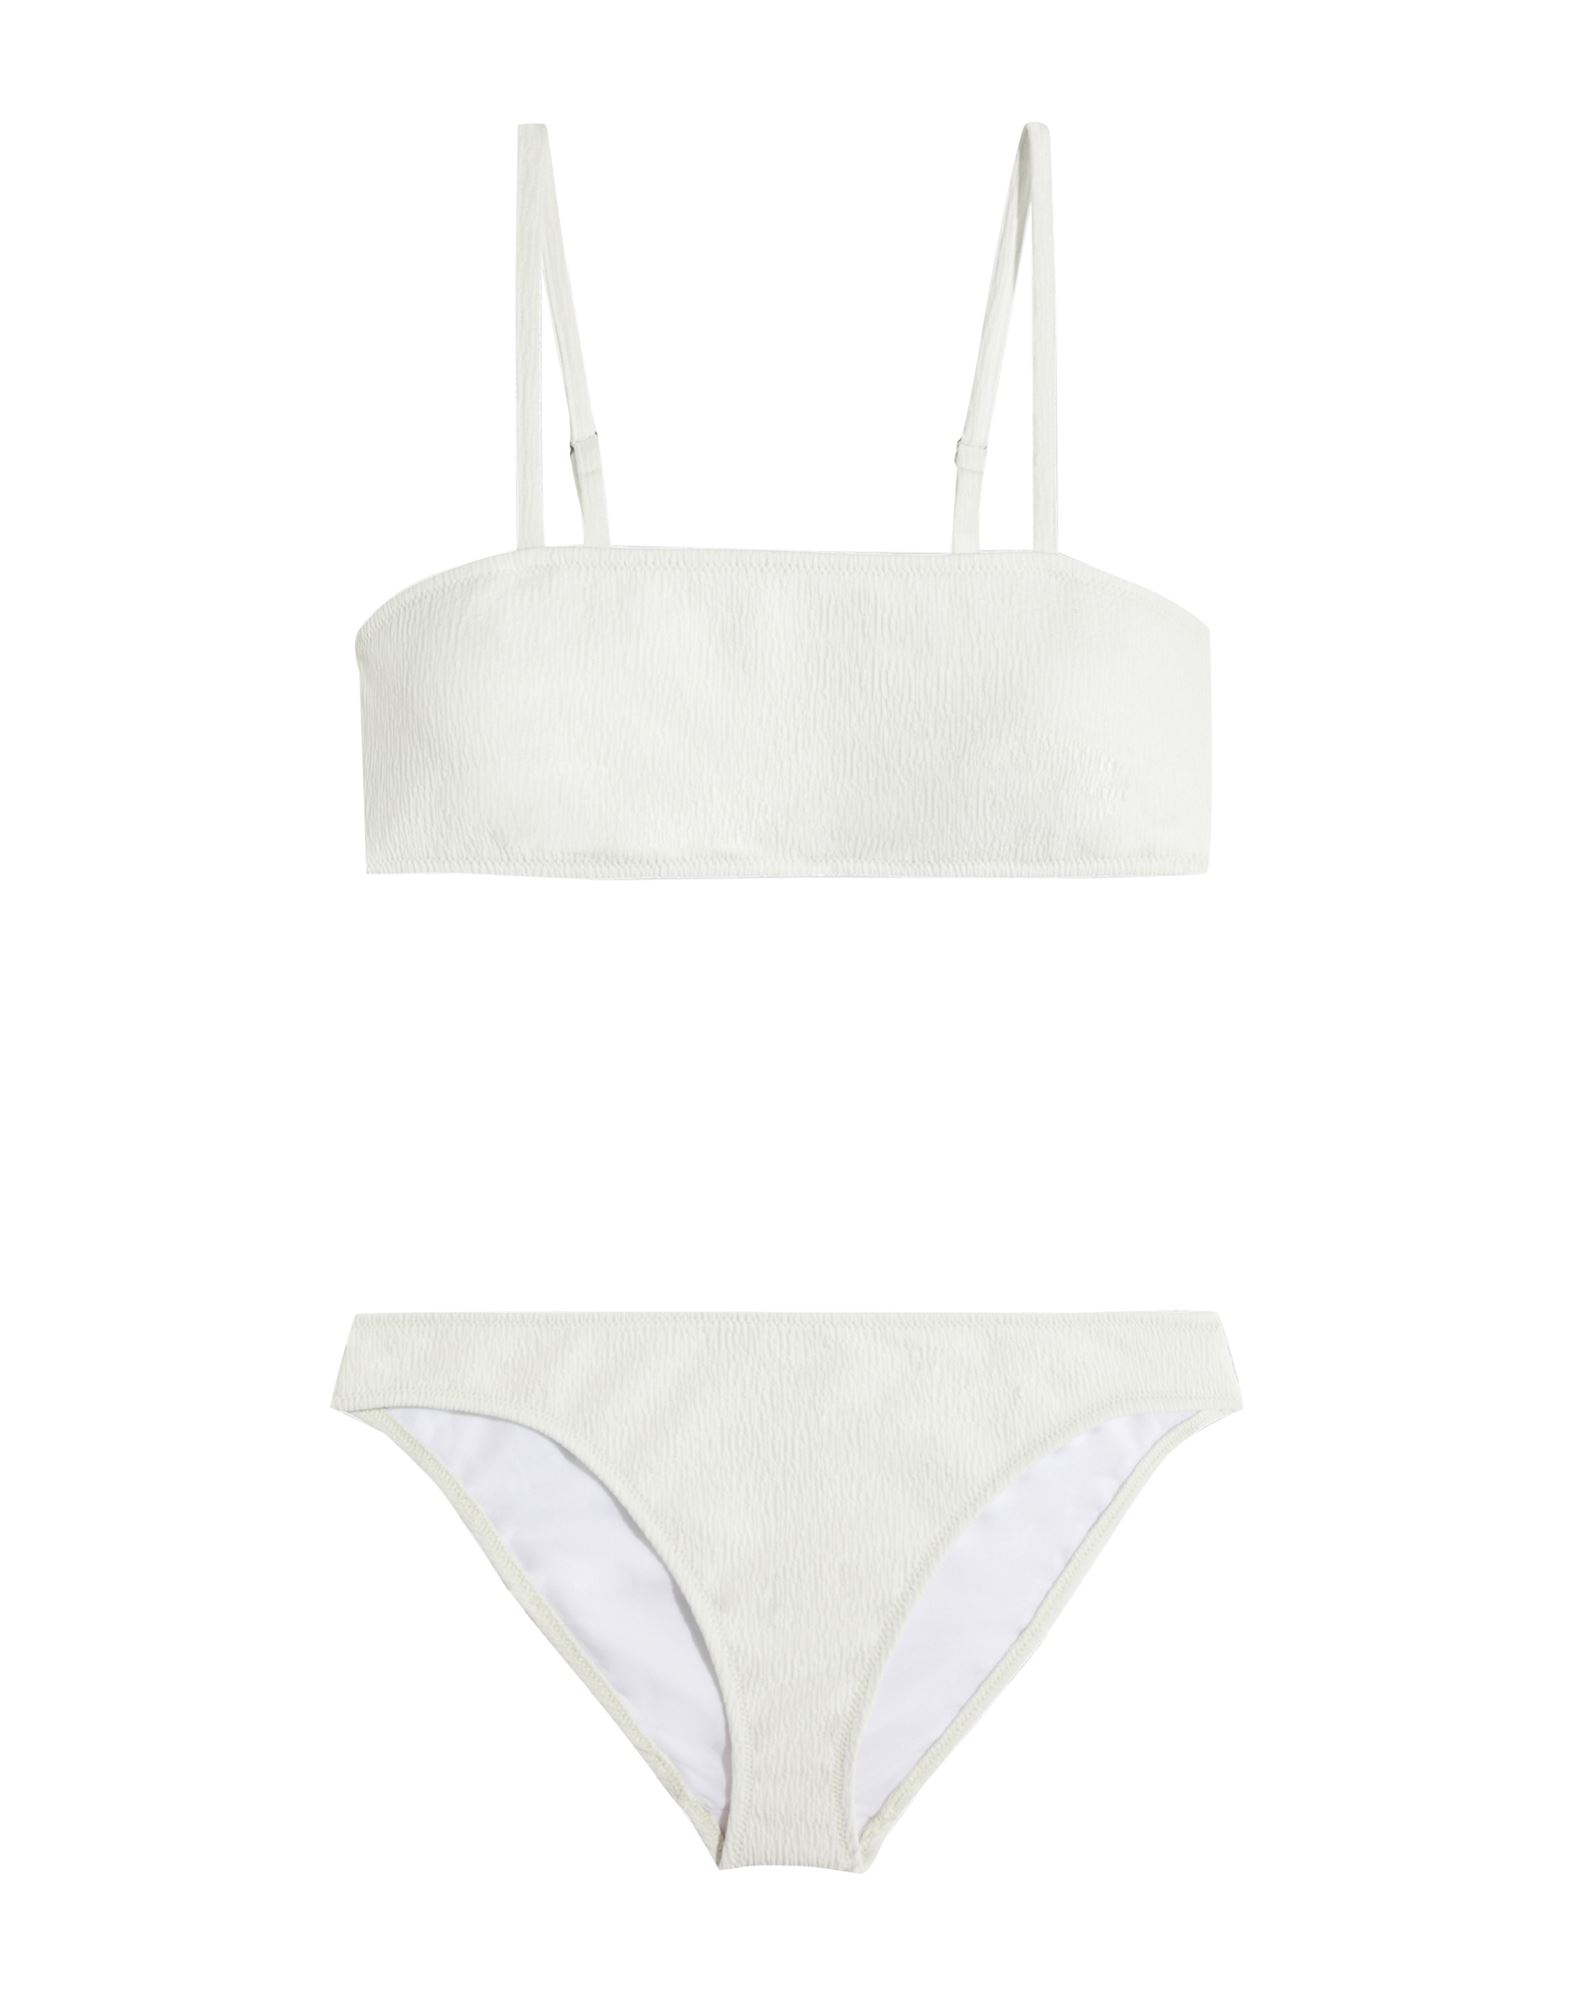 Iris & Ink Woman Bikini White Size M Recycled Polyester, Elastane